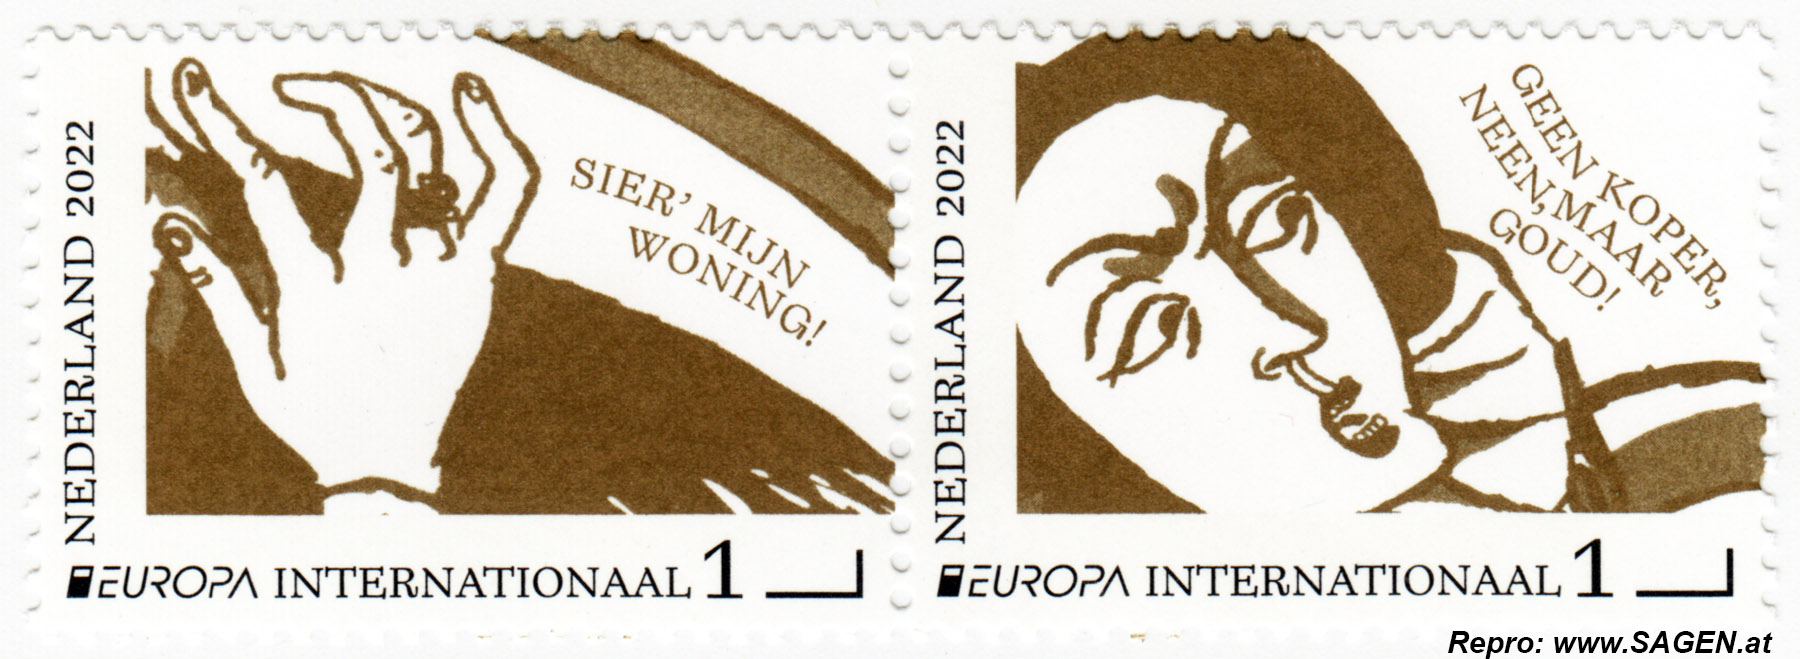 Briefmarken Niederlande: Die Frau von Stavoren